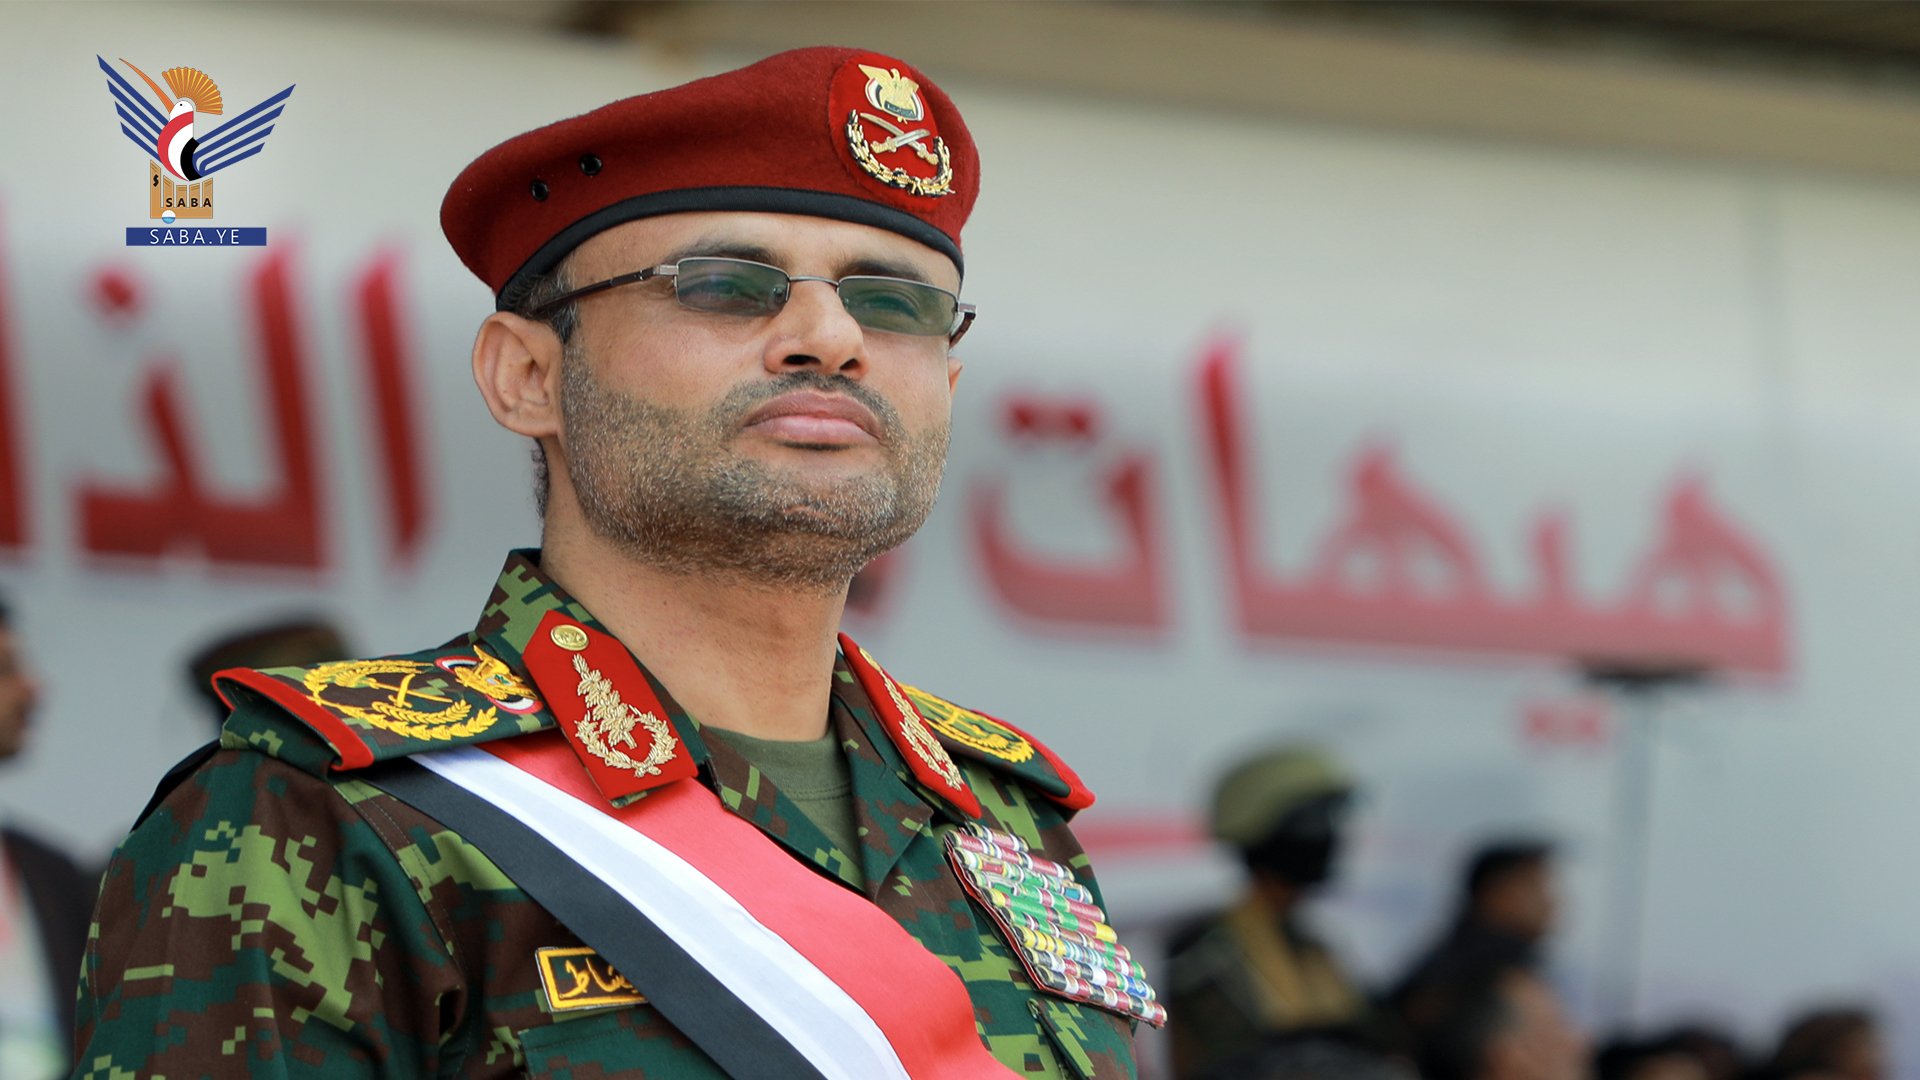 الرئيس المشاط يشيد بإنجازات القوات المسلحة اليمنية في الدفاع عن فلسطين والمقدسات ومساندة غزة